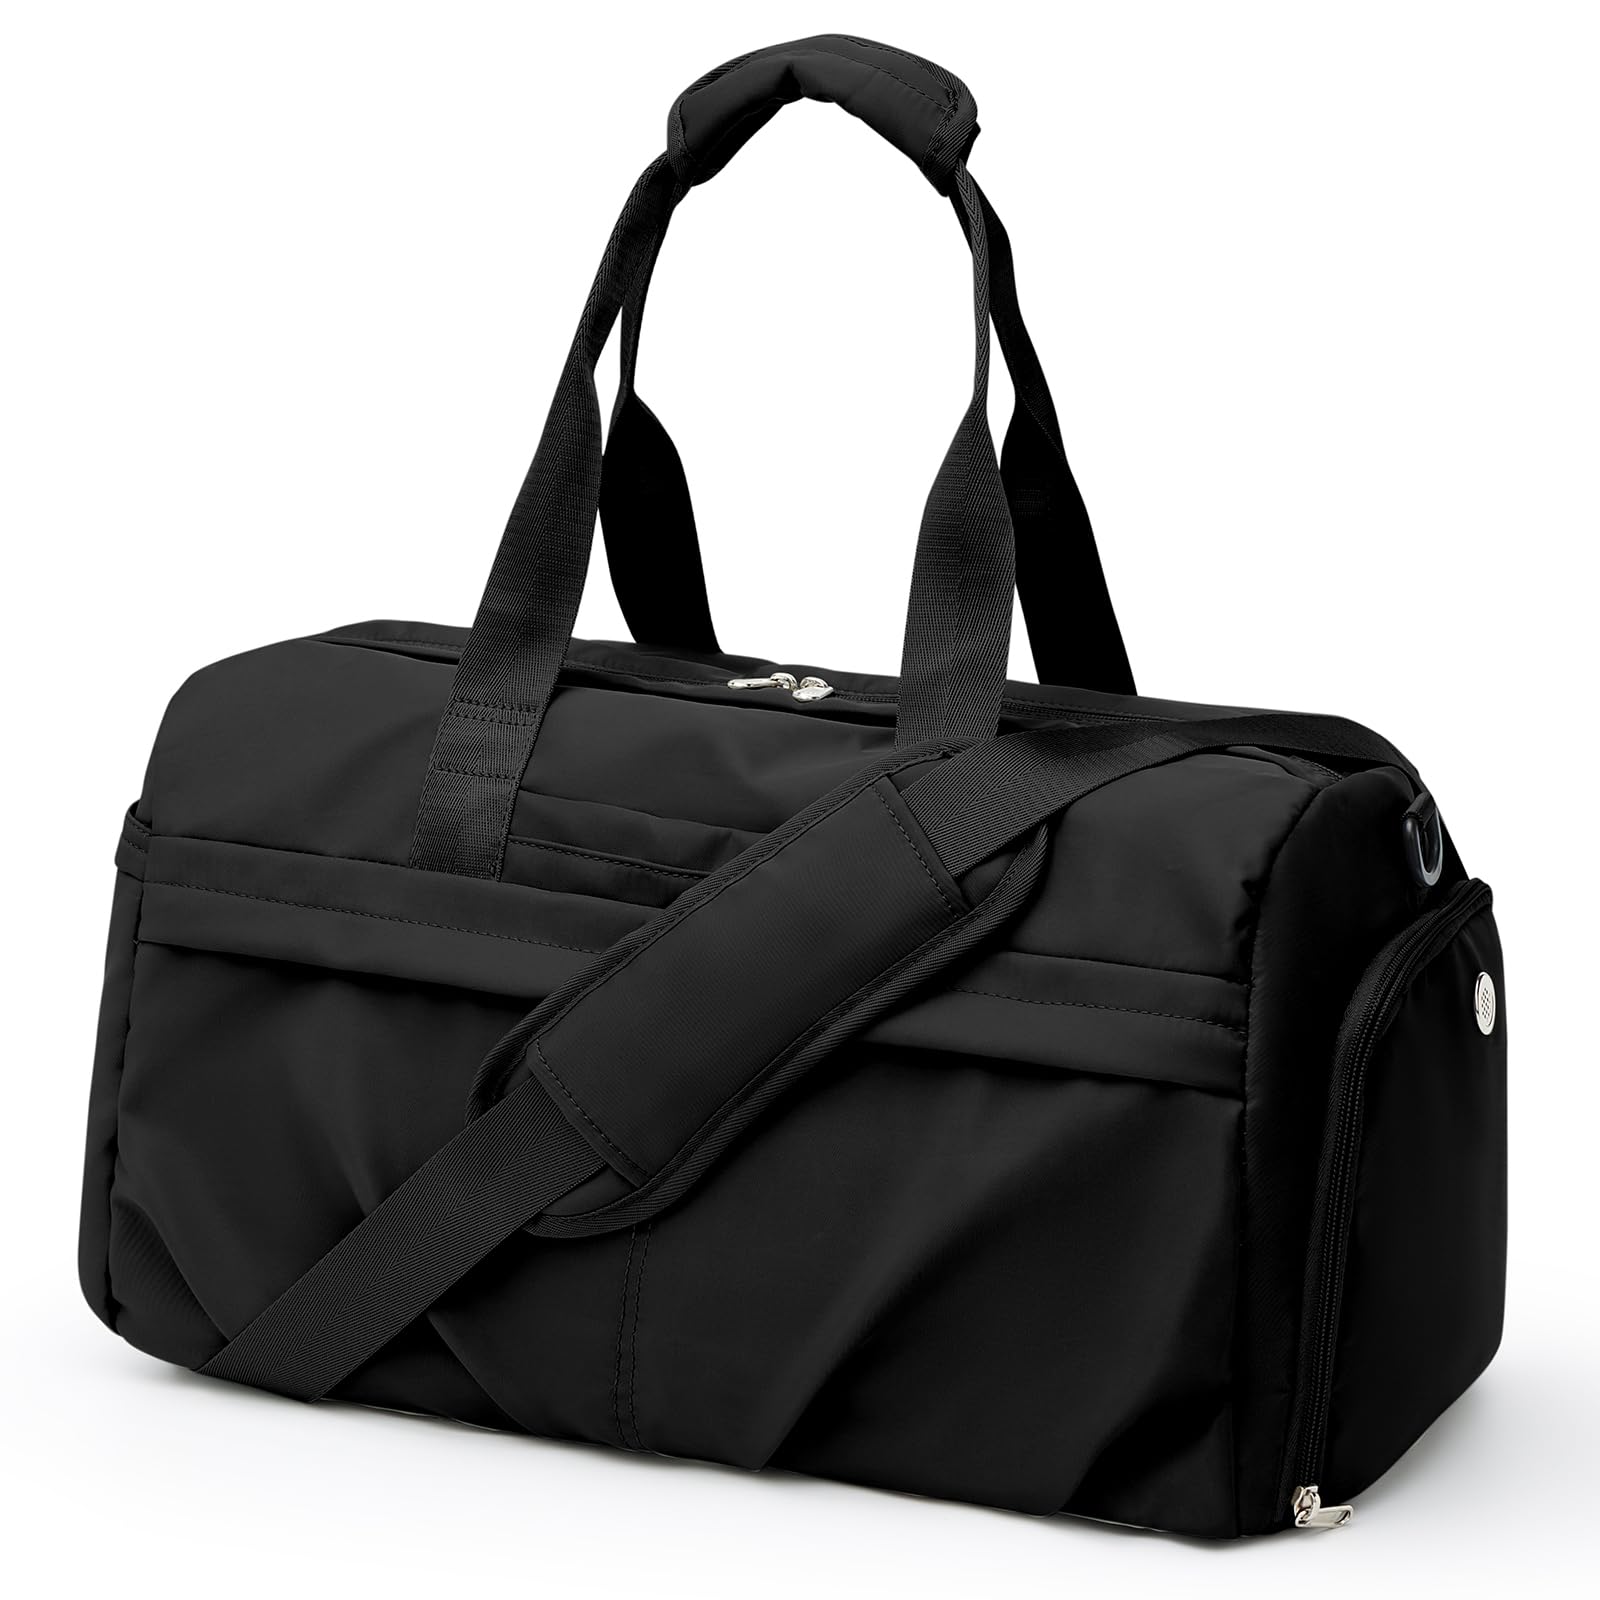 旅行バッグ 拡張可能ボストンバッグ メンズレディーススポーツバッグ 大容量防水キャリーオンバッグ 修学旅行ボストンバック スポーツバ